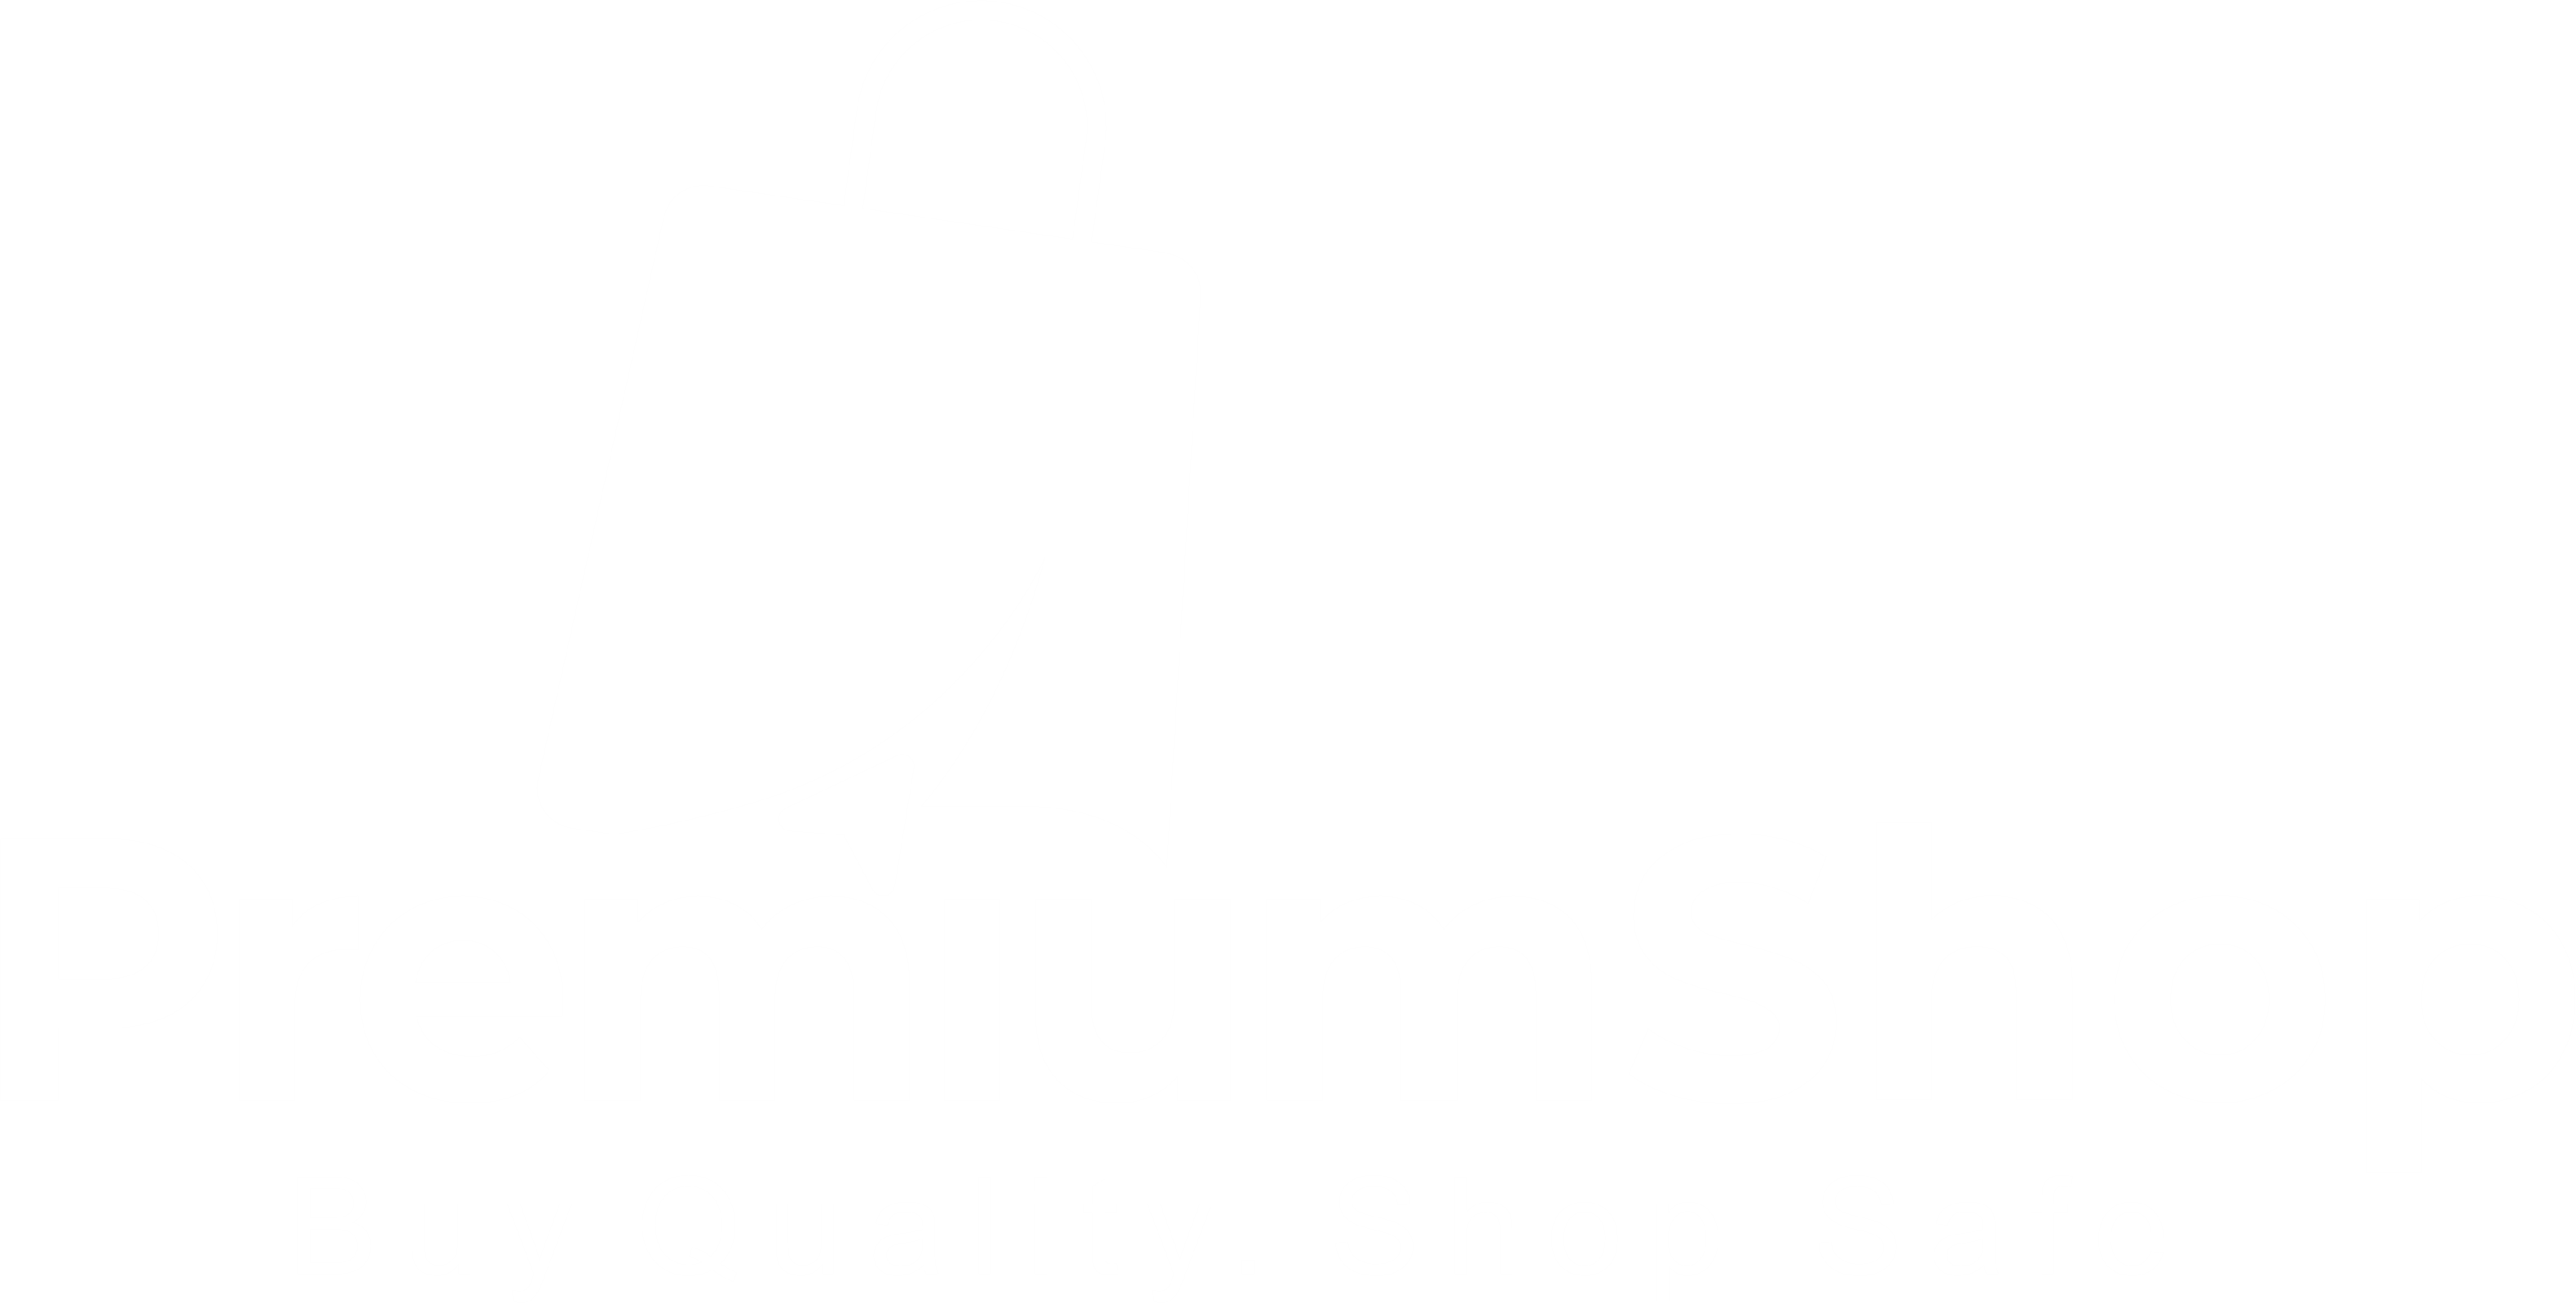 Premium Shop